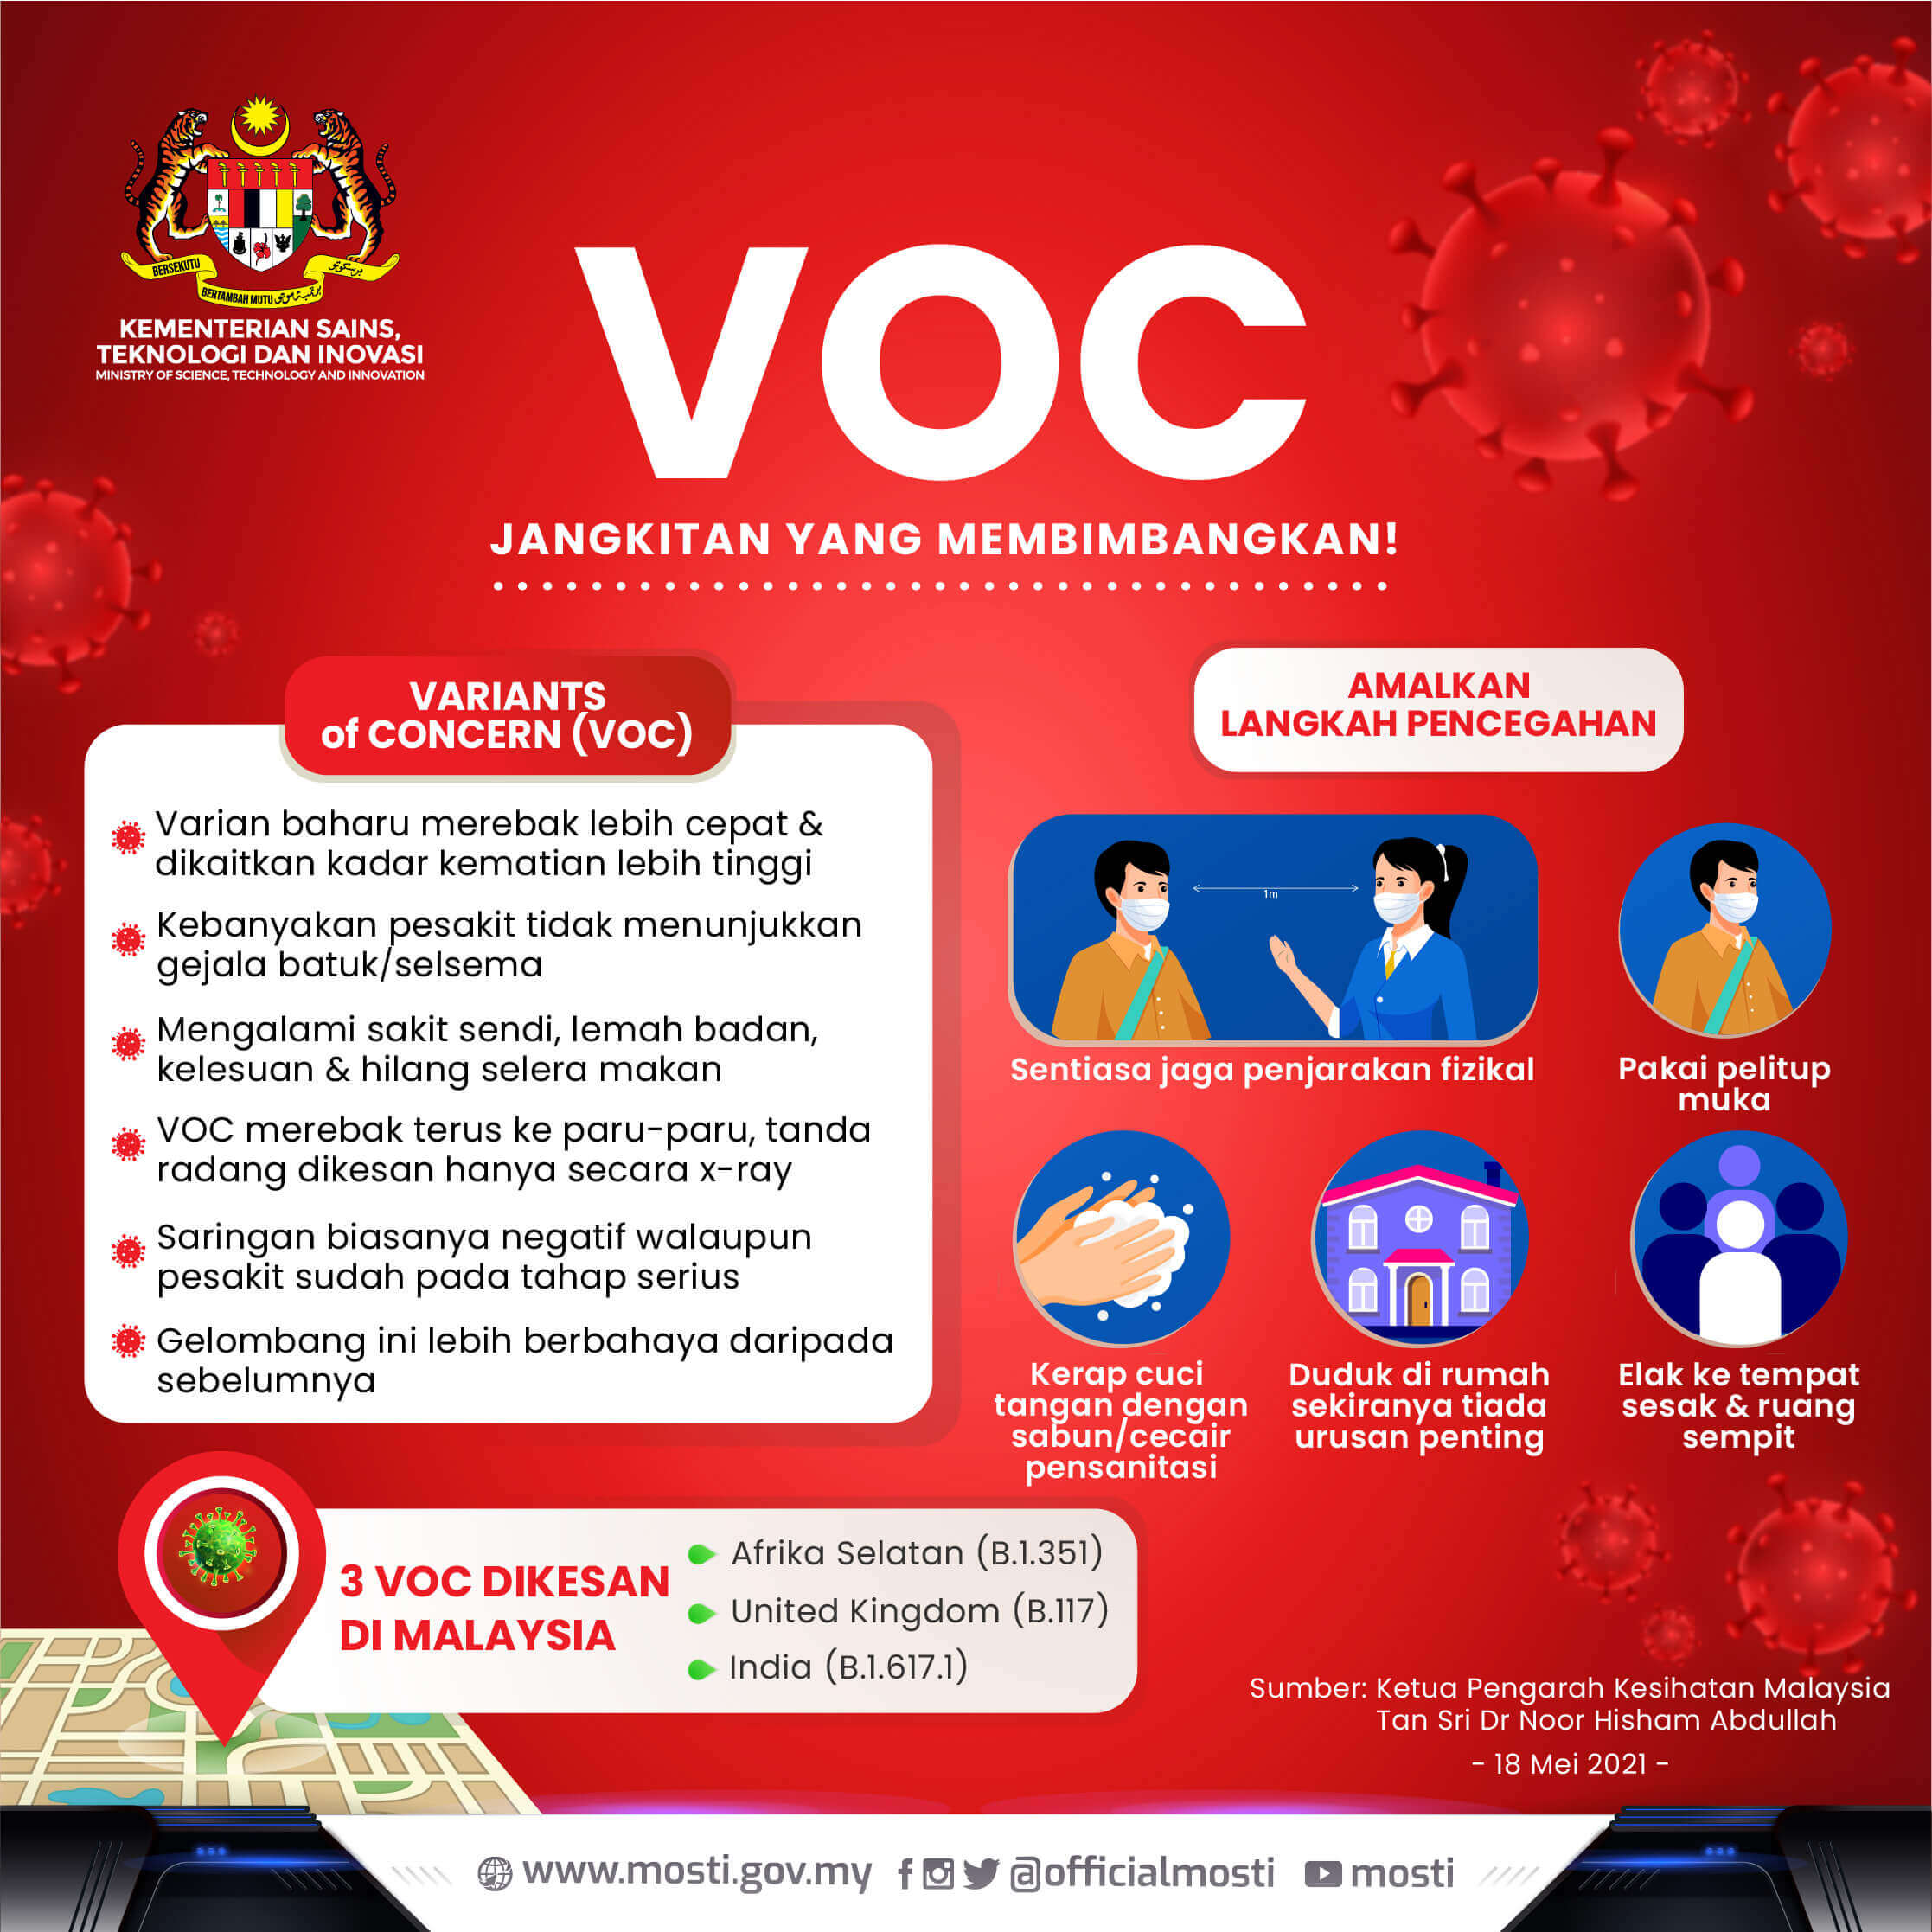 Variants of Concern VOC Jangkitan yang Membimbangkan